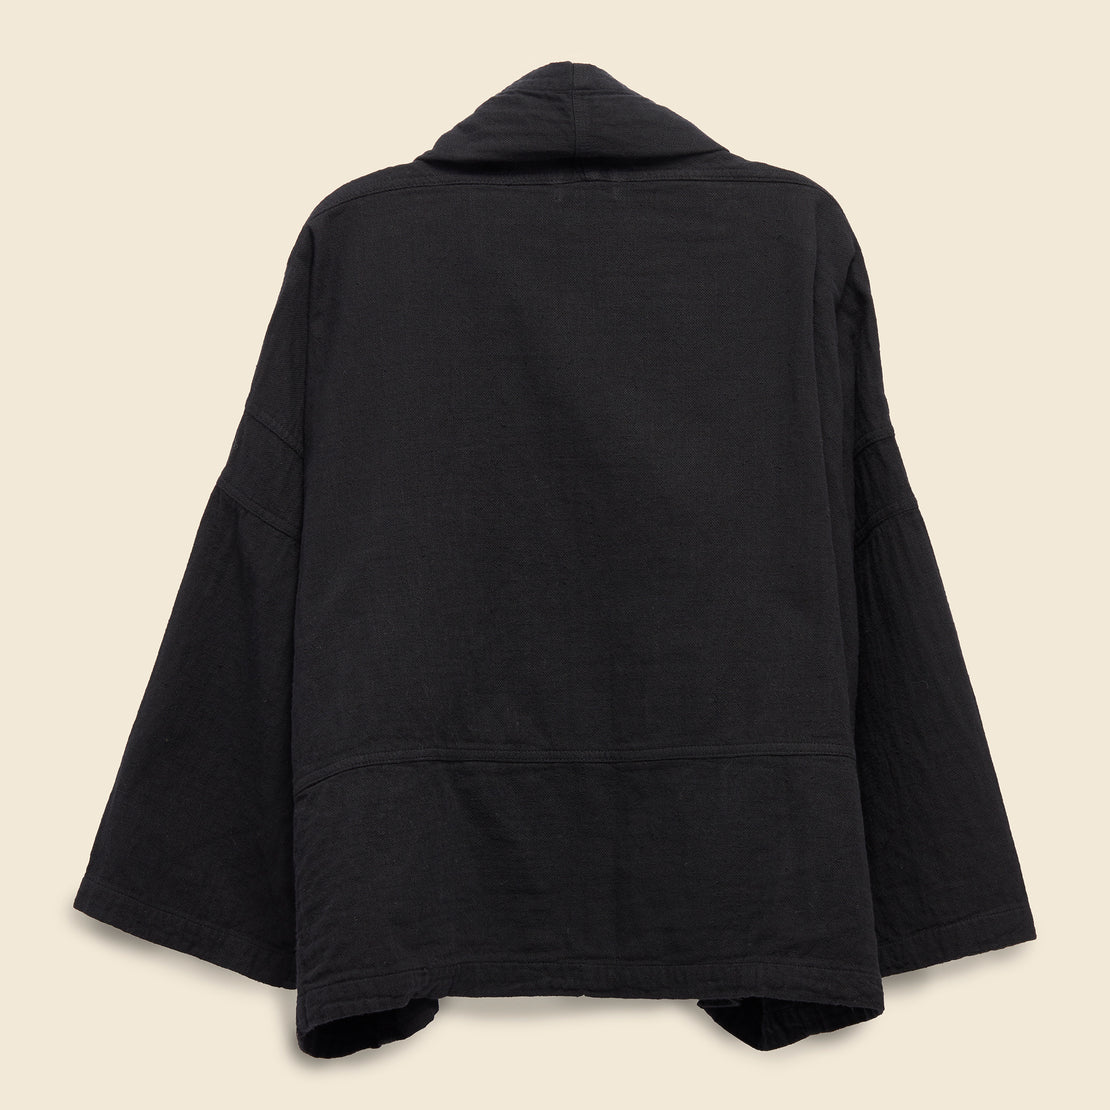 Kimono Jacket - Black - Atelier Delphine - STAG Provisions - W - Tops - Kimono